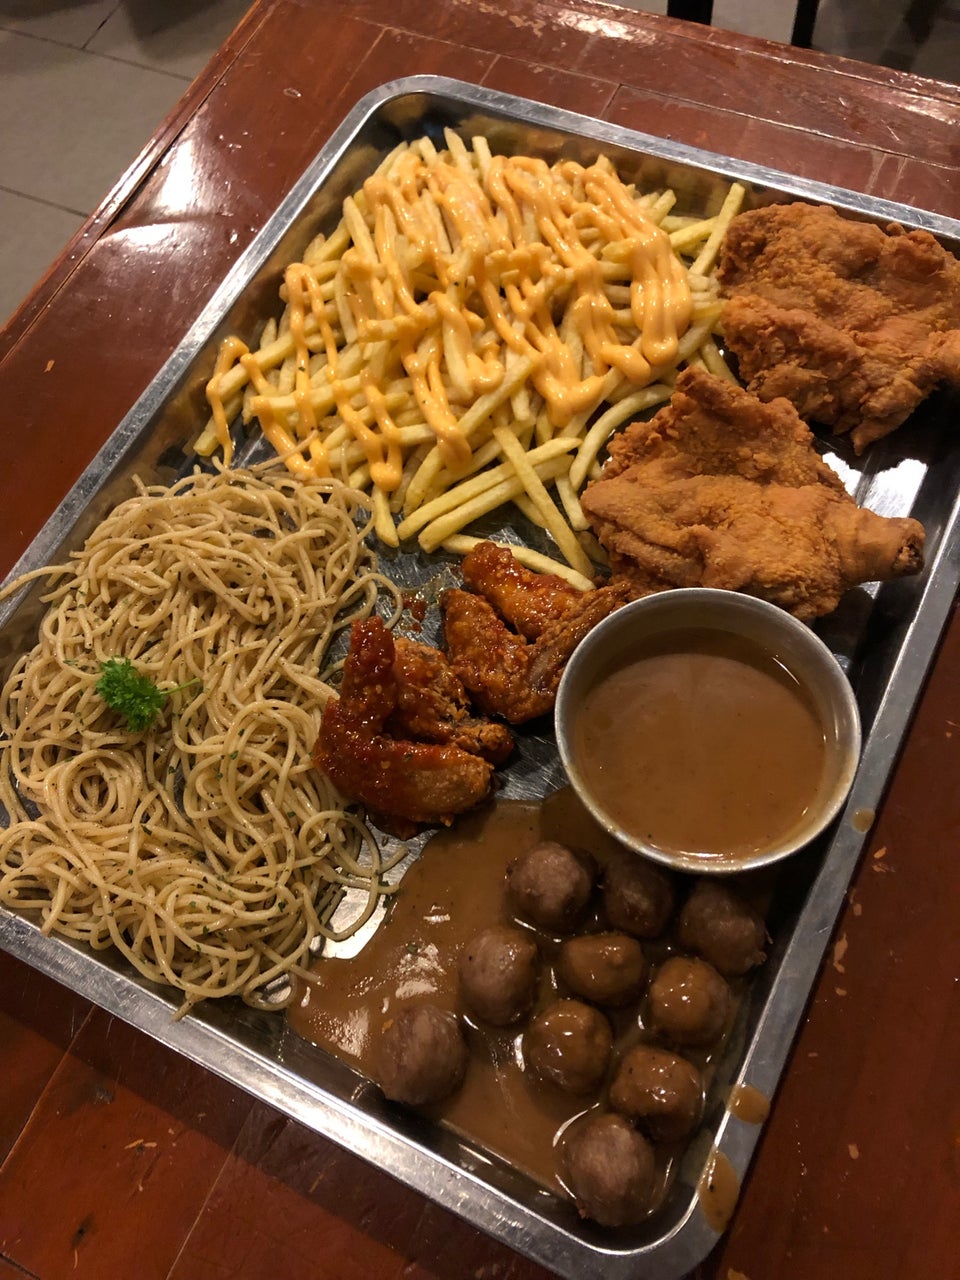 35 Tempat Makan Menarik Di Shah Alam 2020 Restoran Paling Best